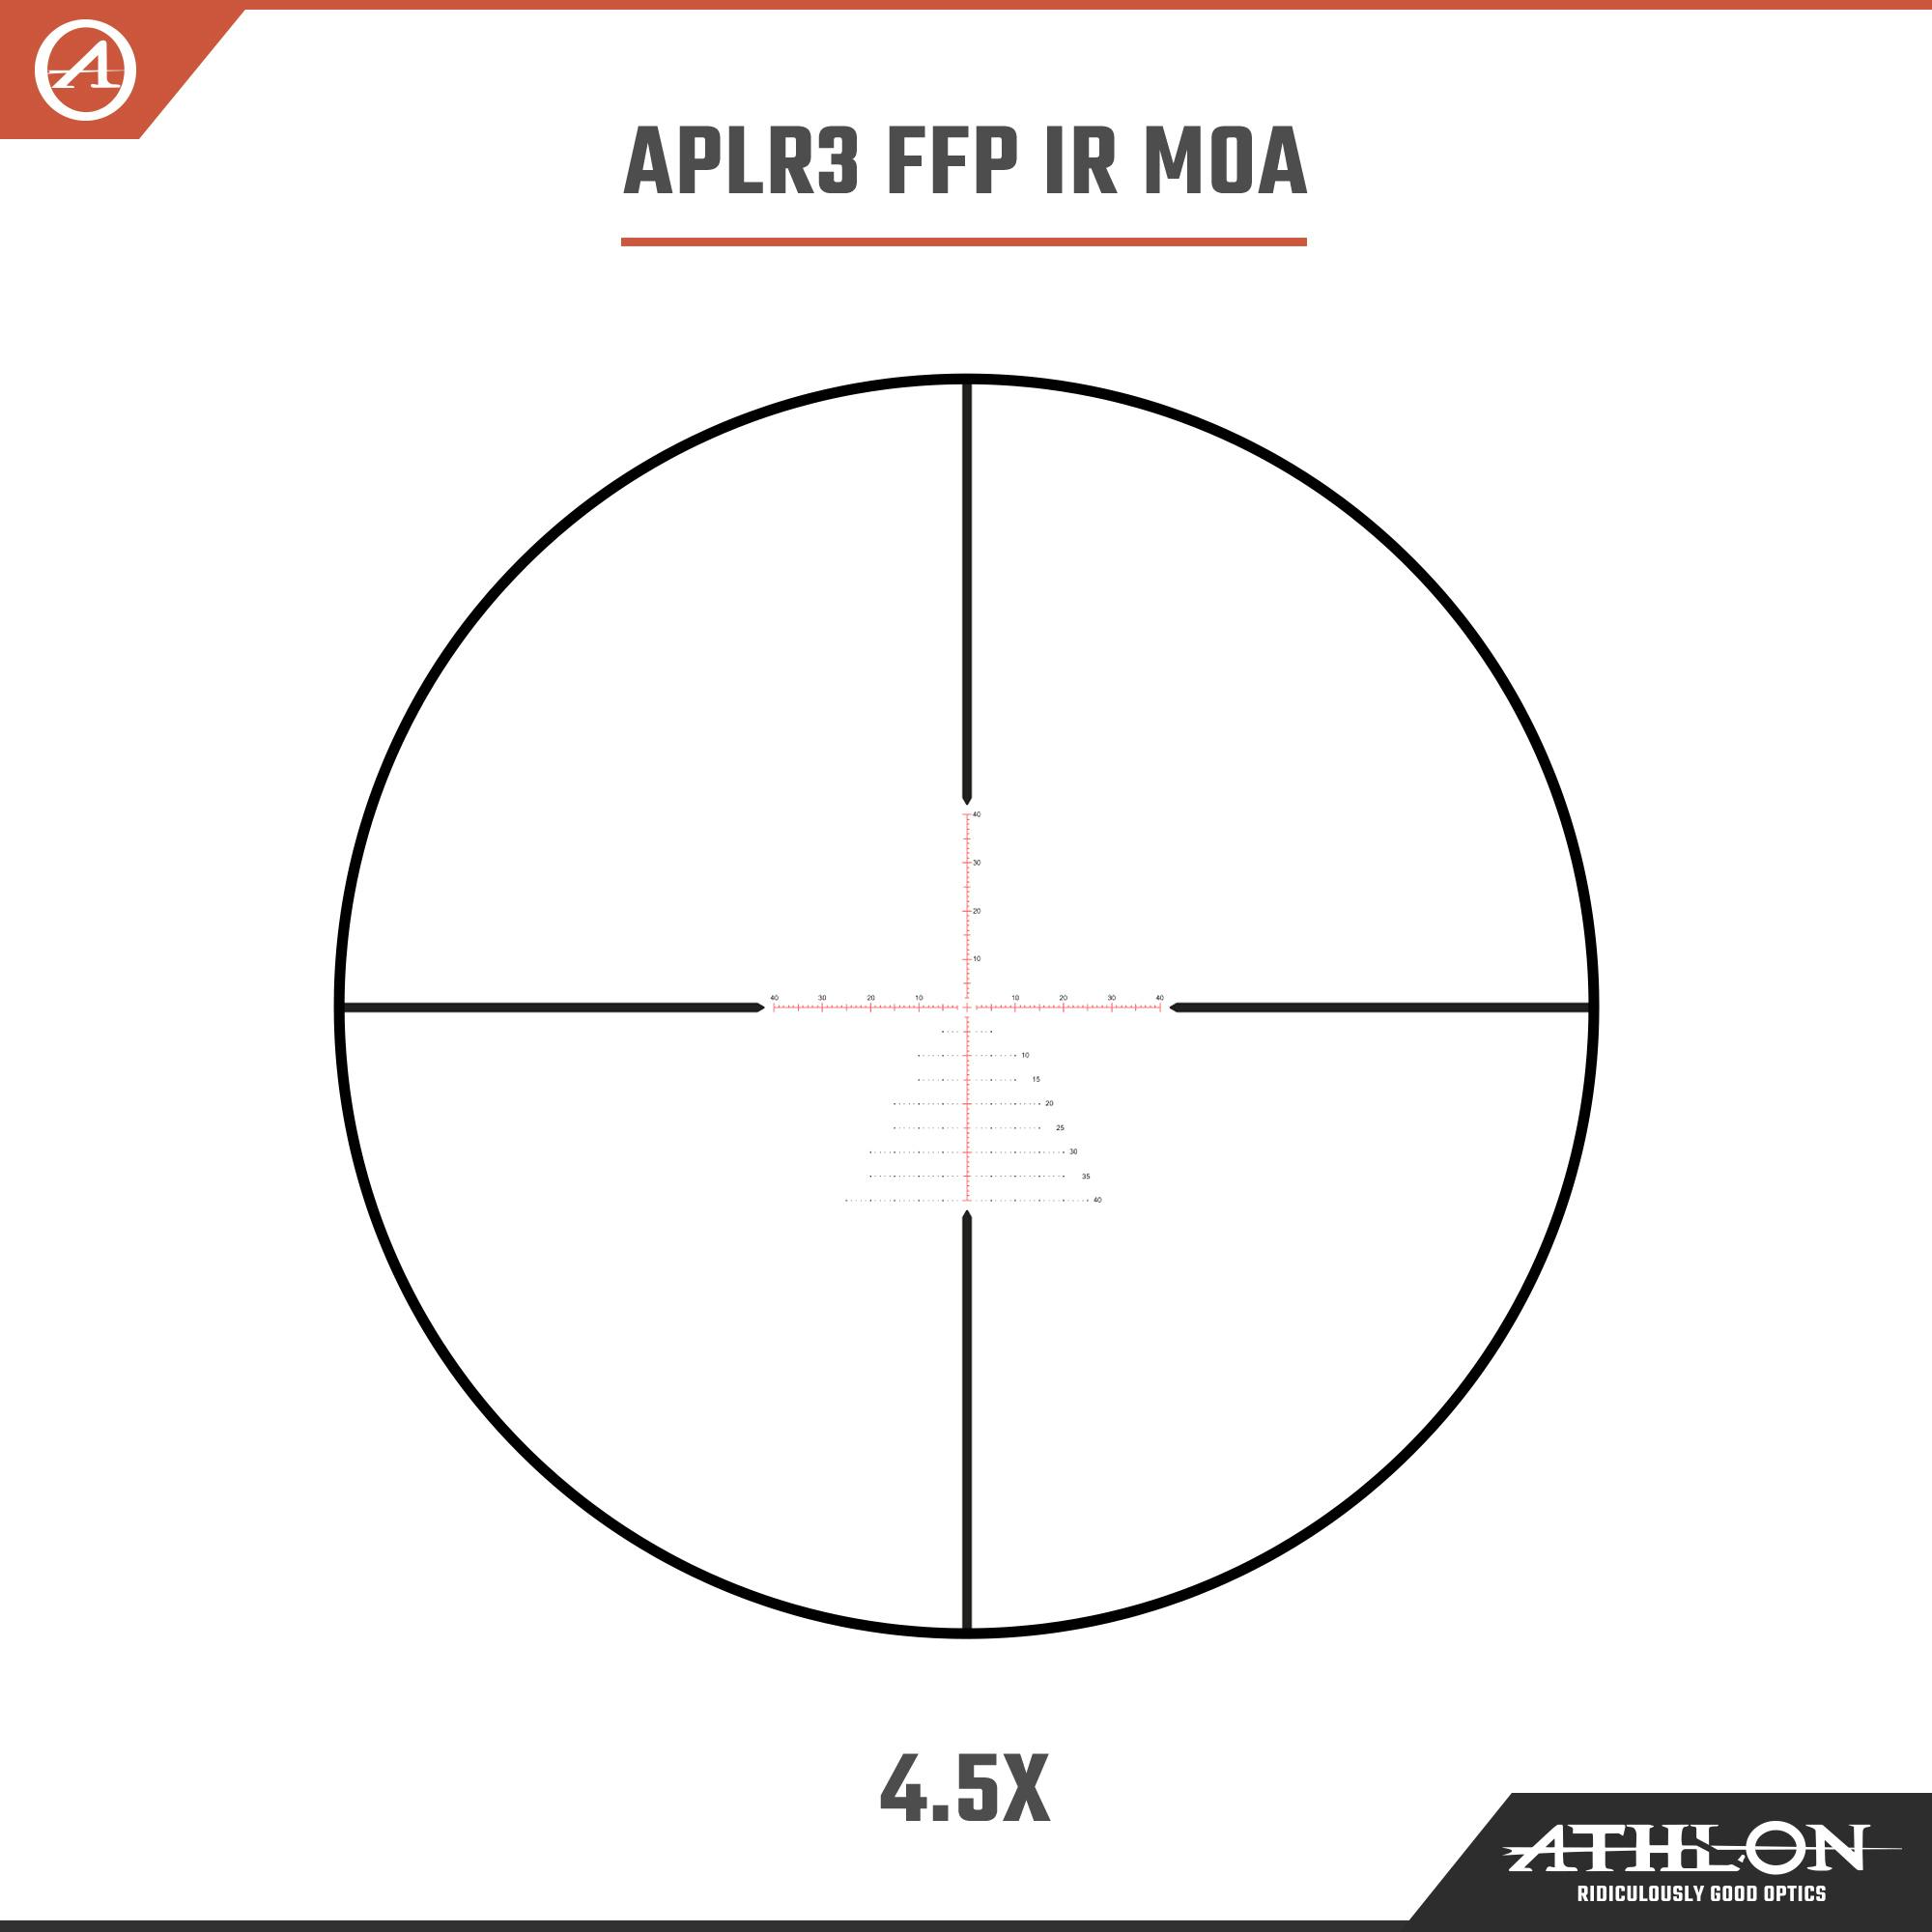 https://admin.blackarea.eu/wp-content/uploads/2021/06/212008_Athlon_Optics_Puskohlad_Ares-BTR-GEN2-HD_APLR3-FFP-IR-MOA-4point5a.jpg